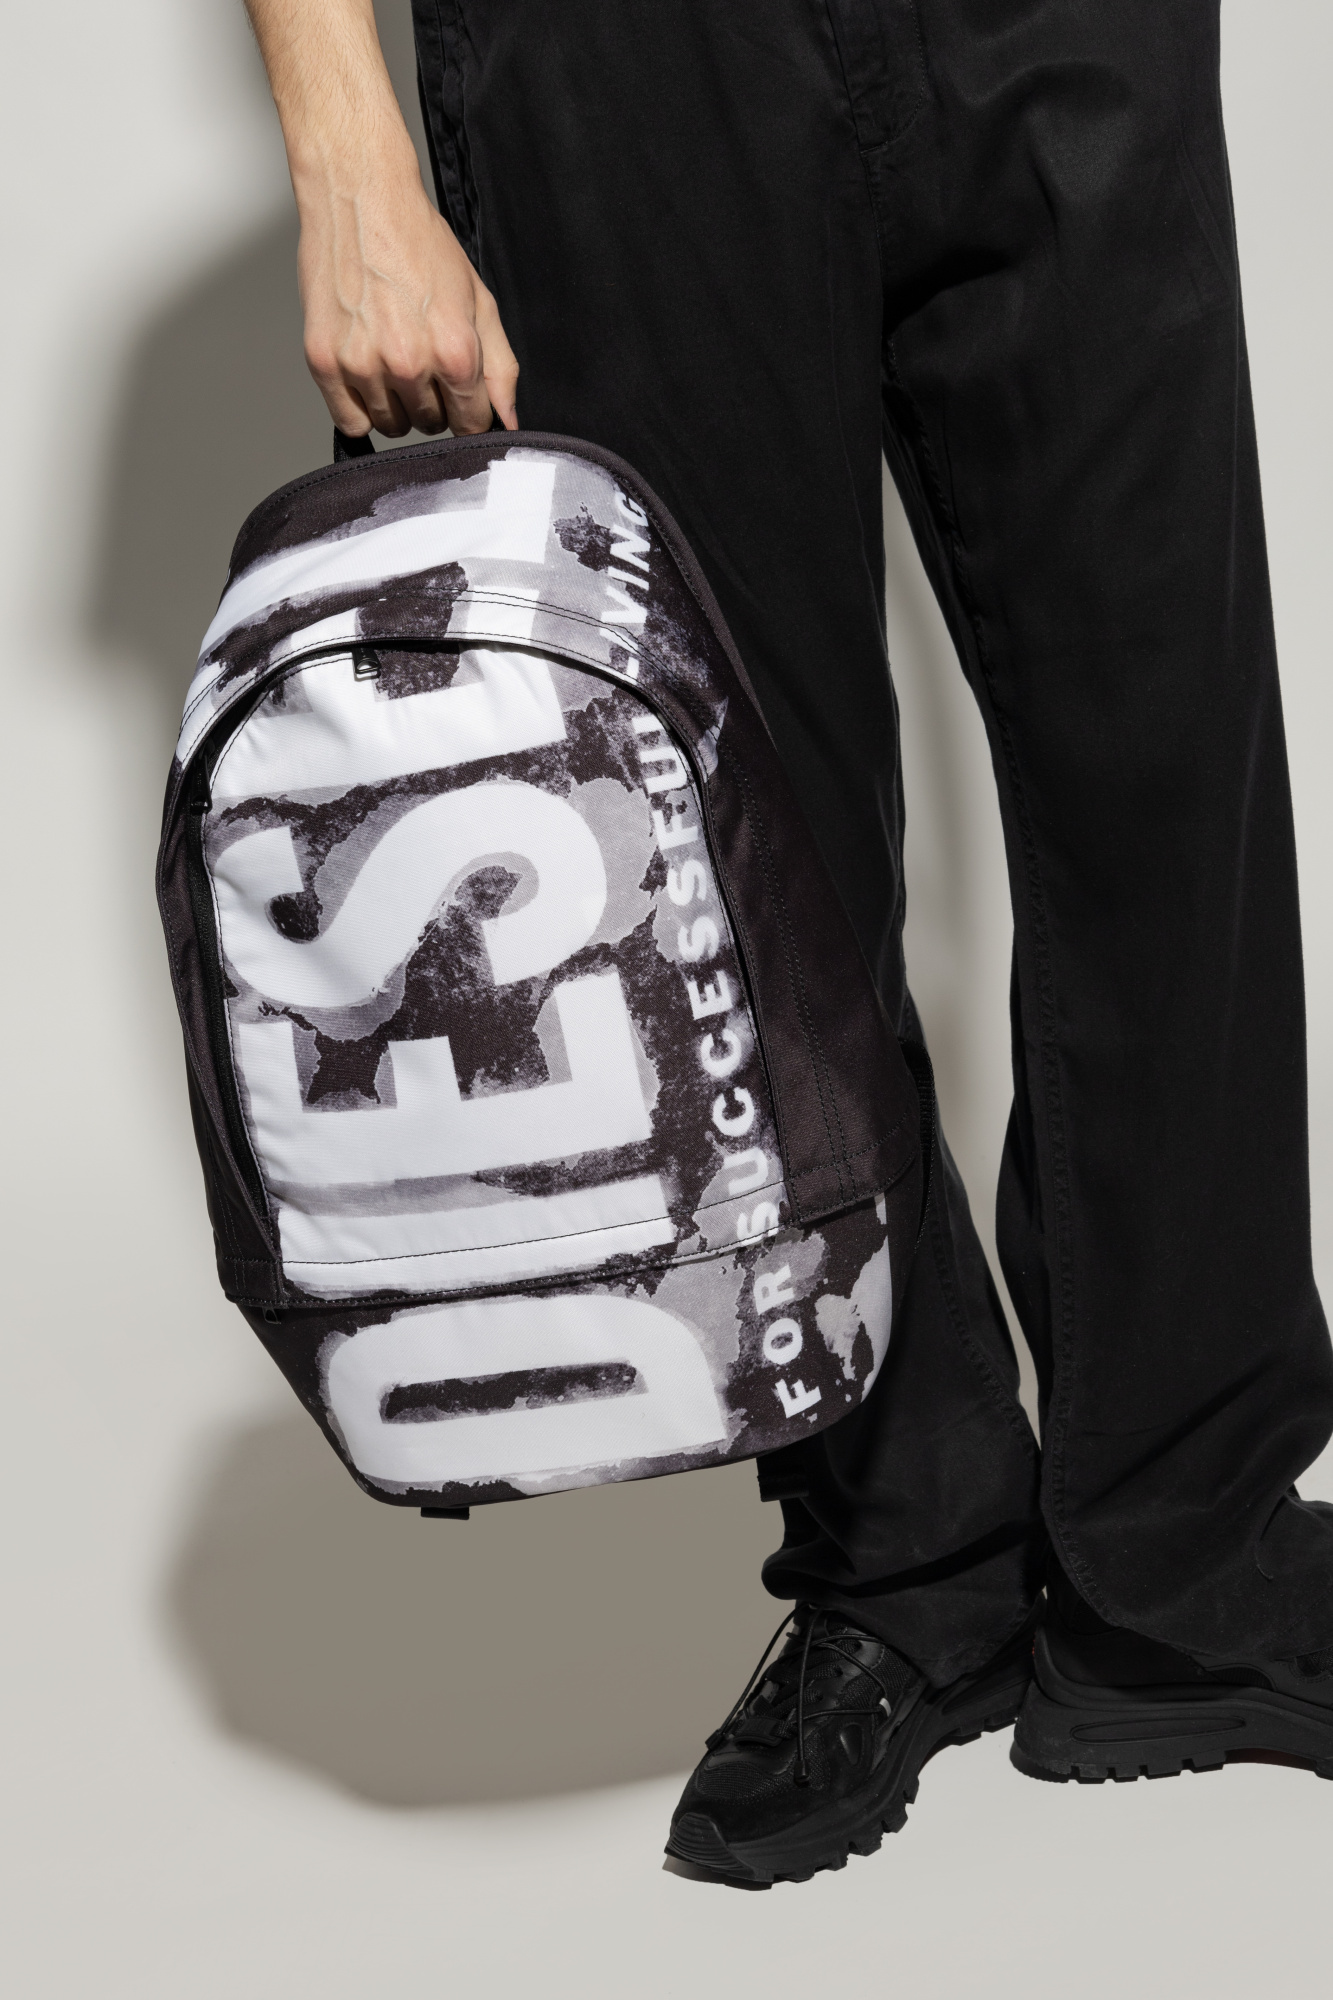 Diesel 'RAVE' backpack | Men's Bags | Vitkac